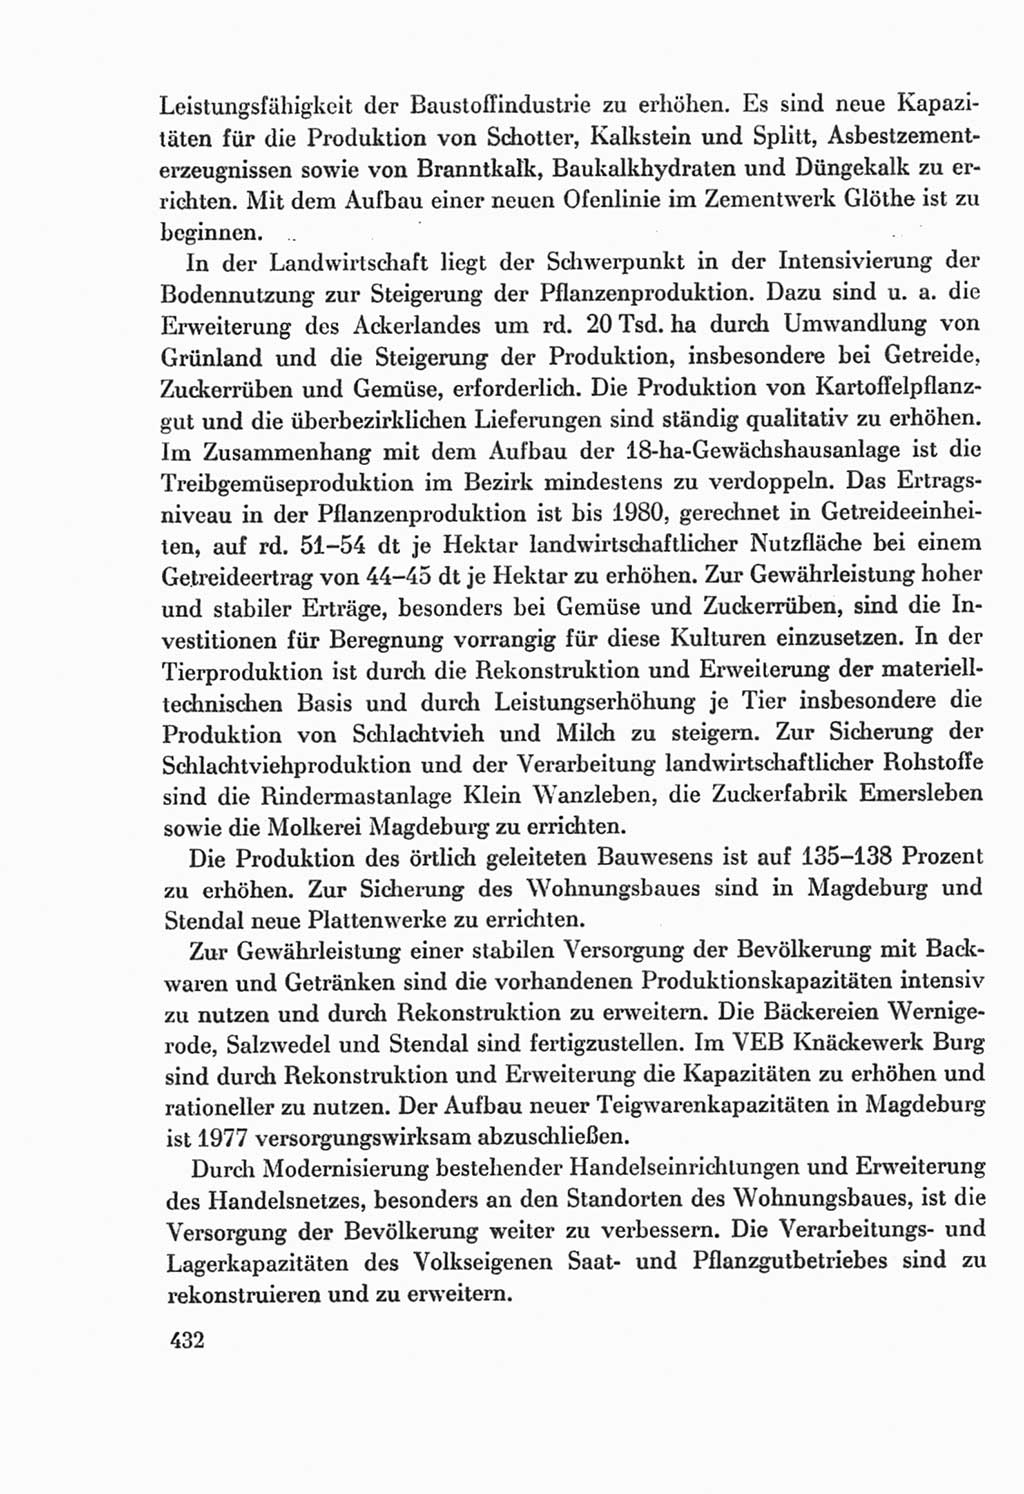 Protokoll der Verhandlungen des Ⅸ. Parteitages der Sozialistischen Einheitspartei Deutschlands (SED) [Deutsche Demokratische Republik (DDR)] 1976, Band 2, Seite 432 (Prot. Verh. Ⅸ. PT SED DDR 1976, Bd. 2, S. 432)